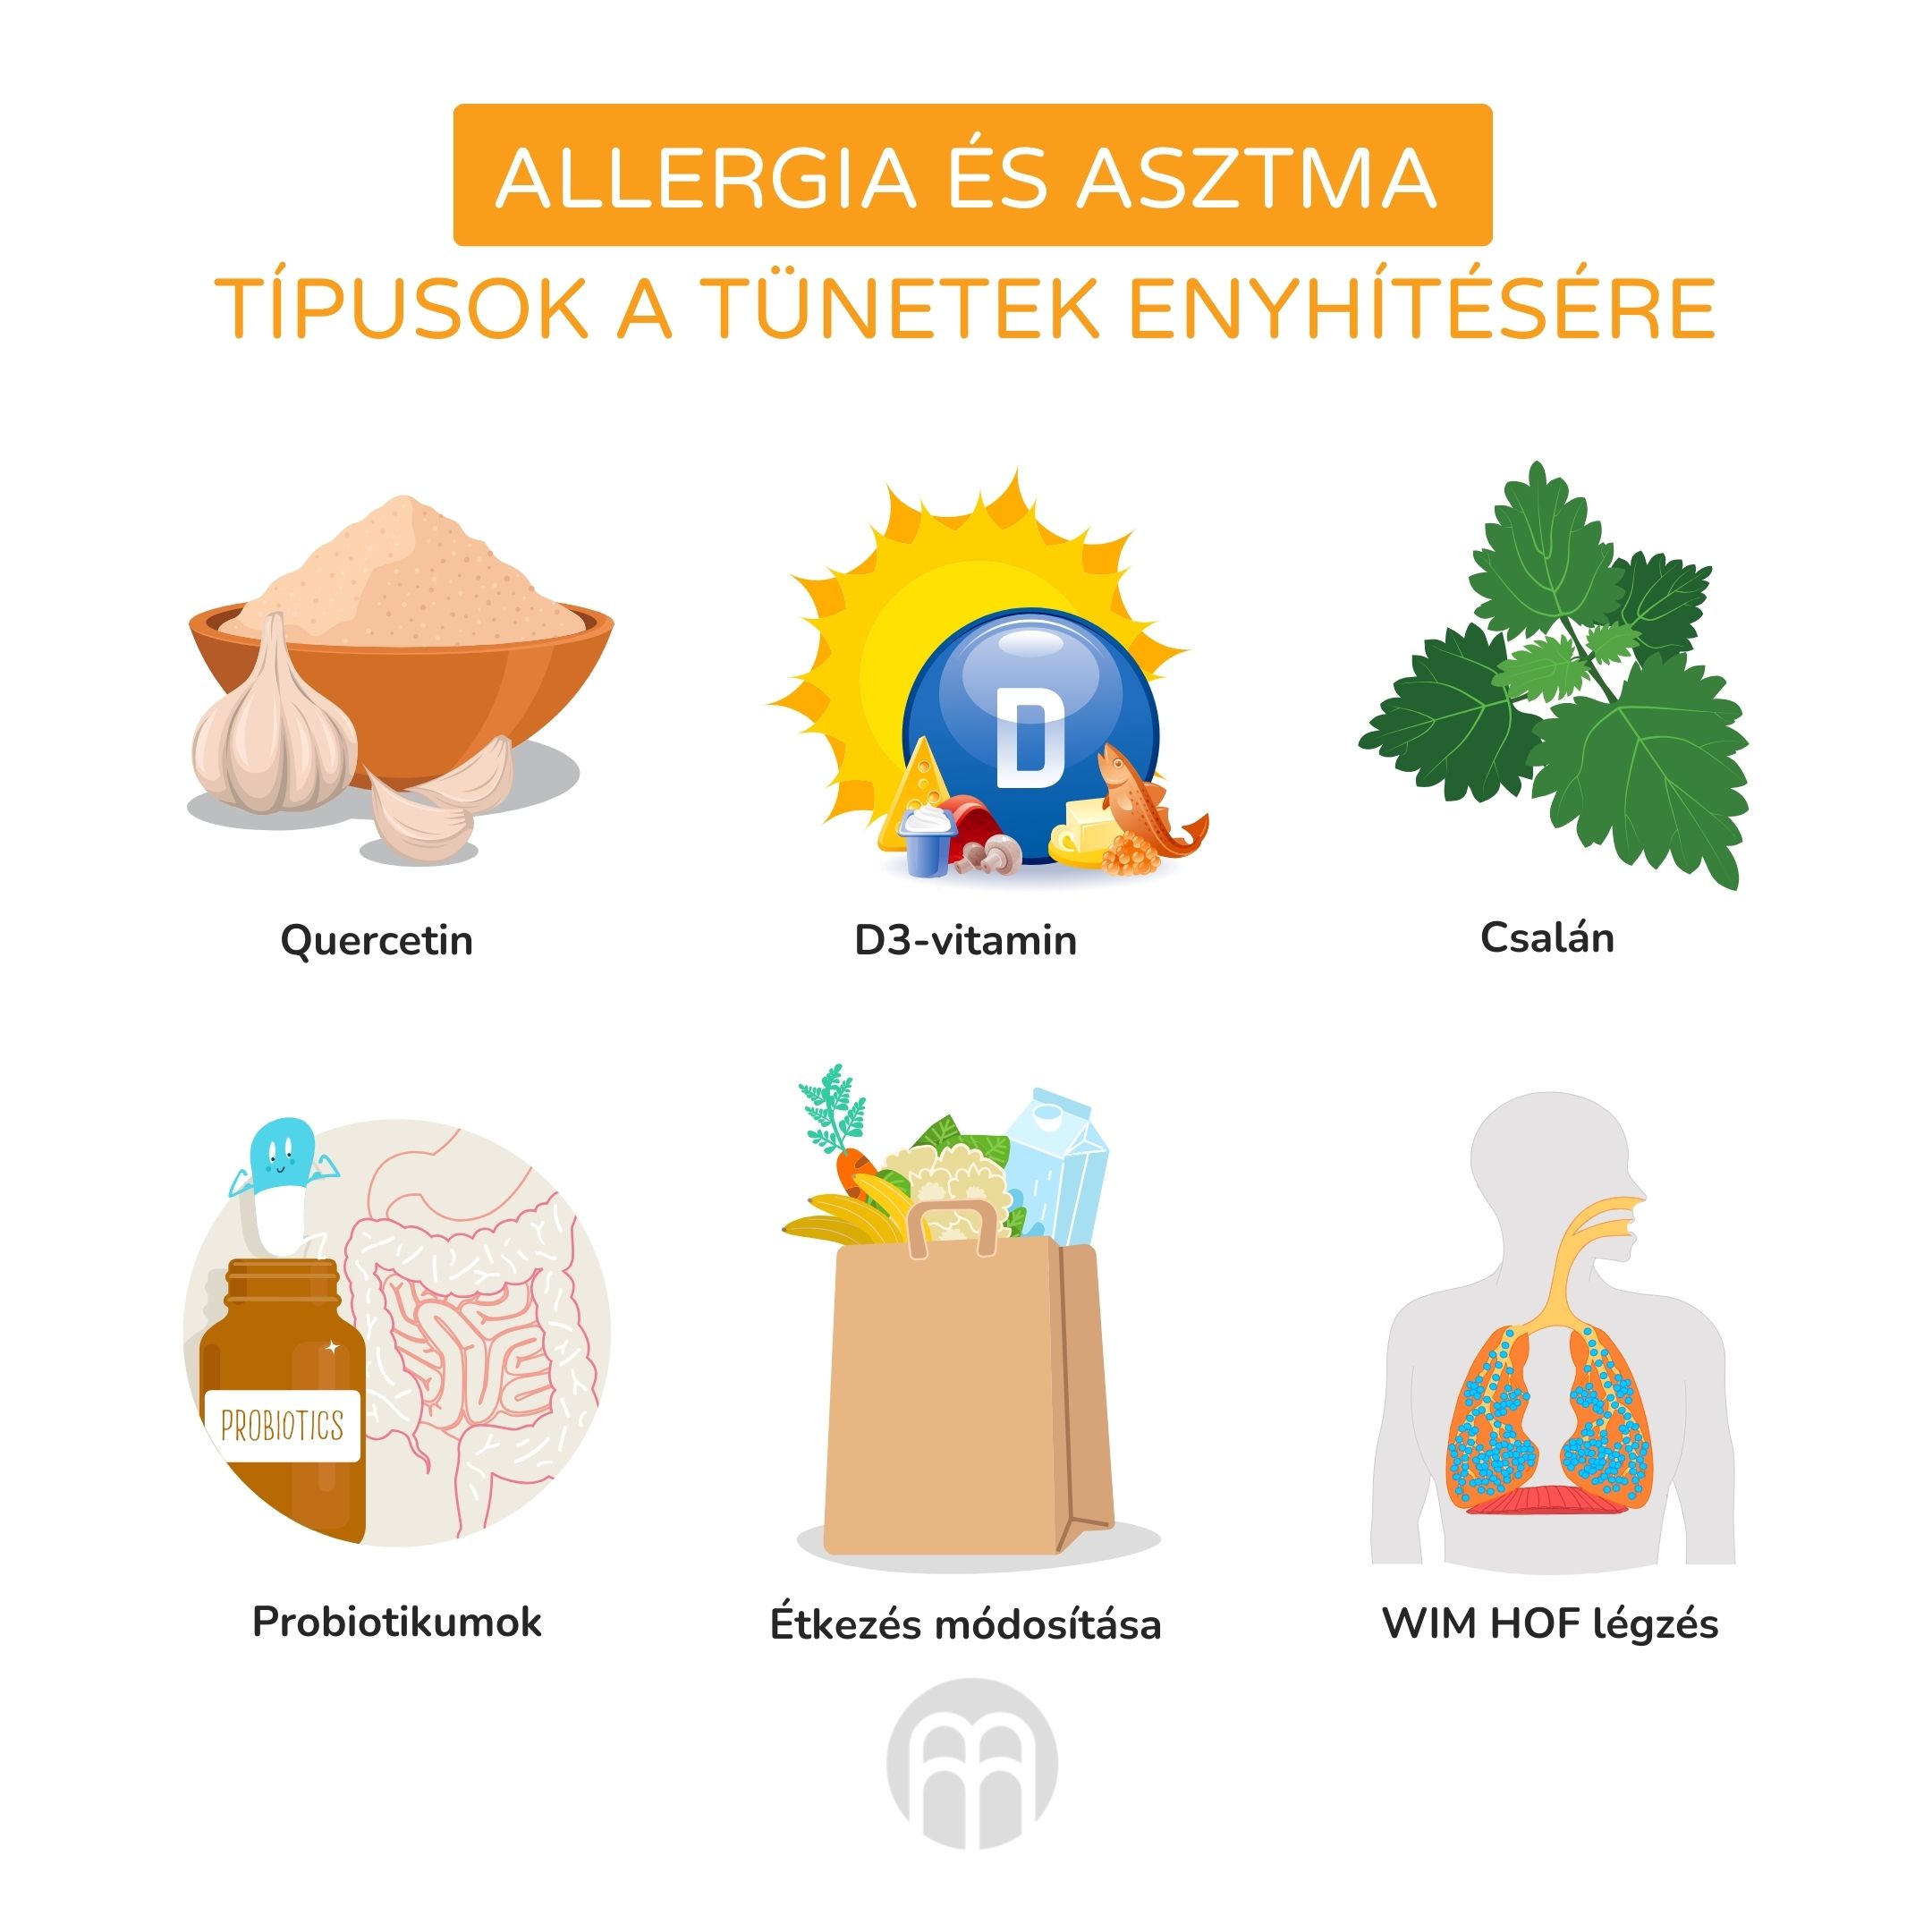 (Maďarština) alergie a astma tipy na zmírnění příznaků